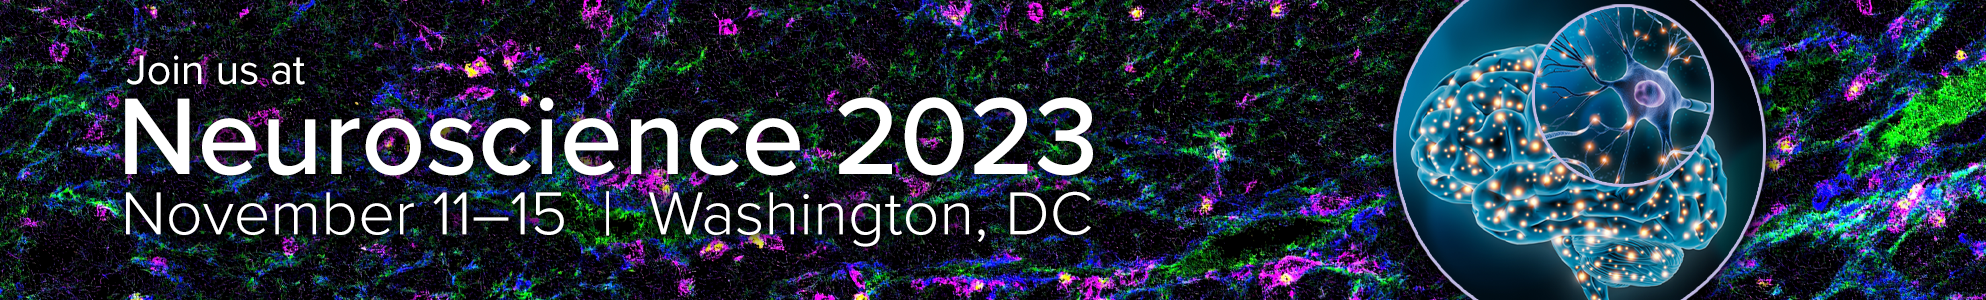 Join us at Neuroscience 2023 | November 11-15 | Washington, DC